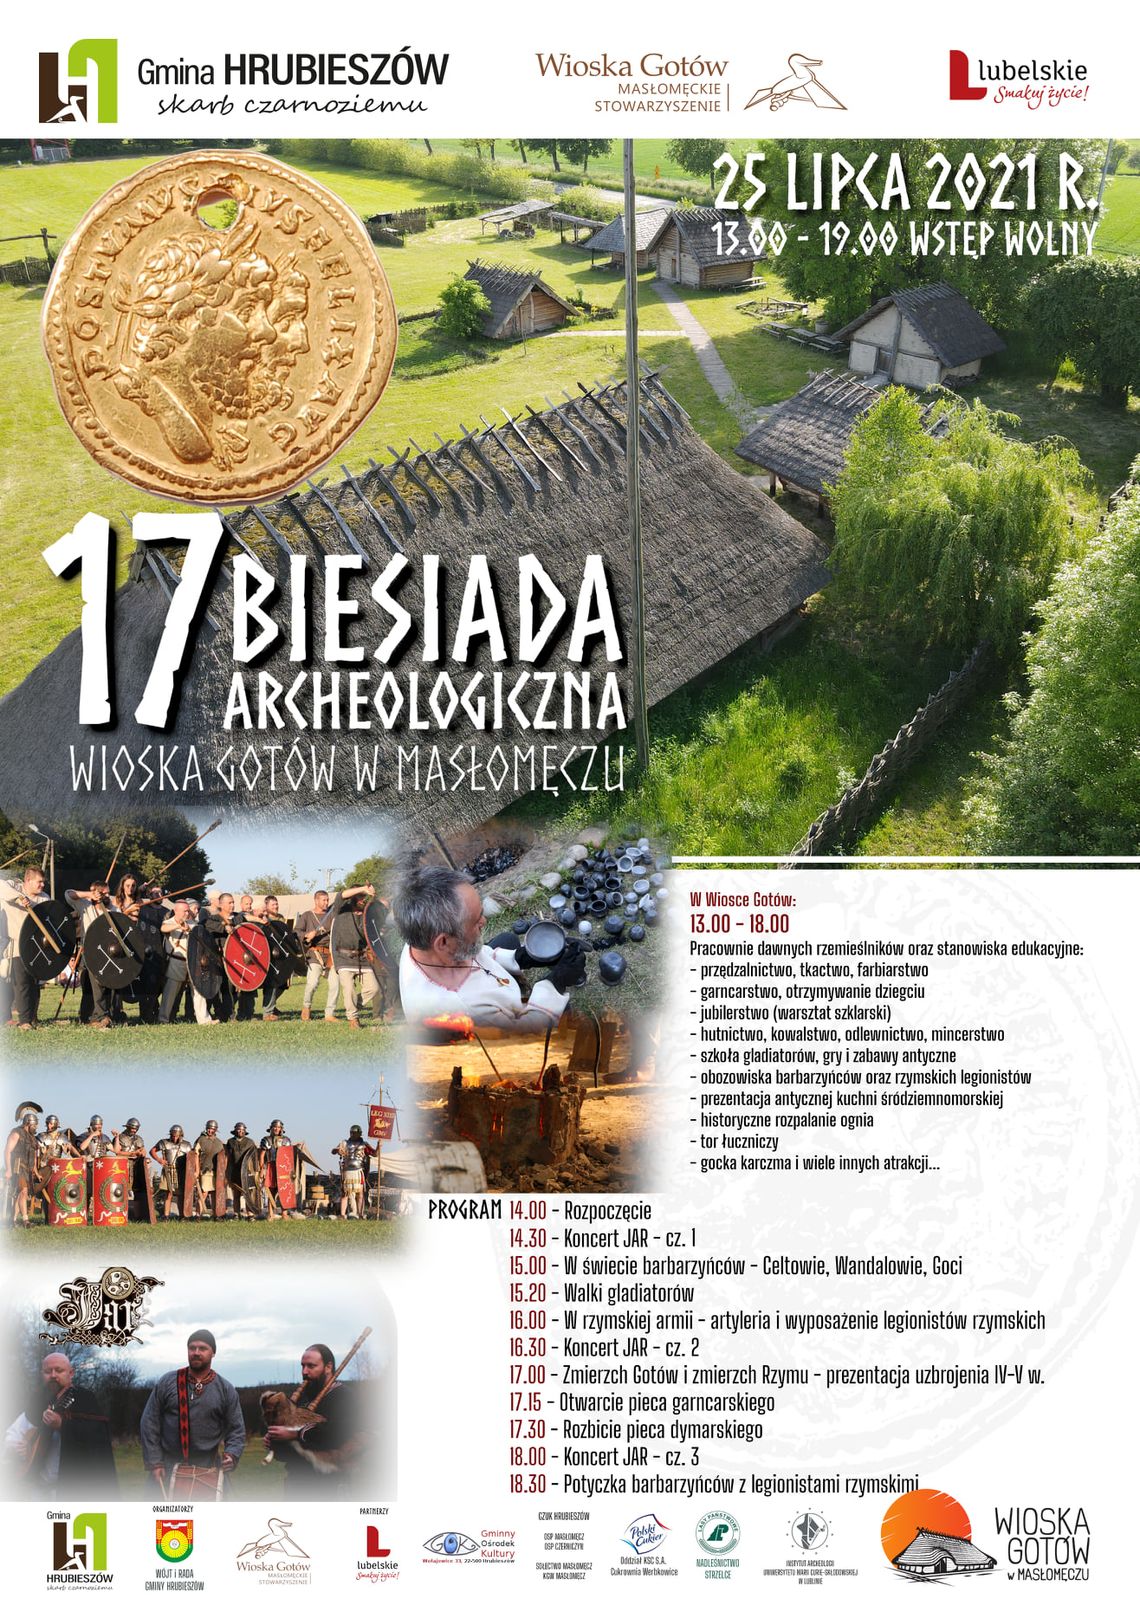 Gm. Hrubieszów: Biesiada archeologiczna w Masłomęczu